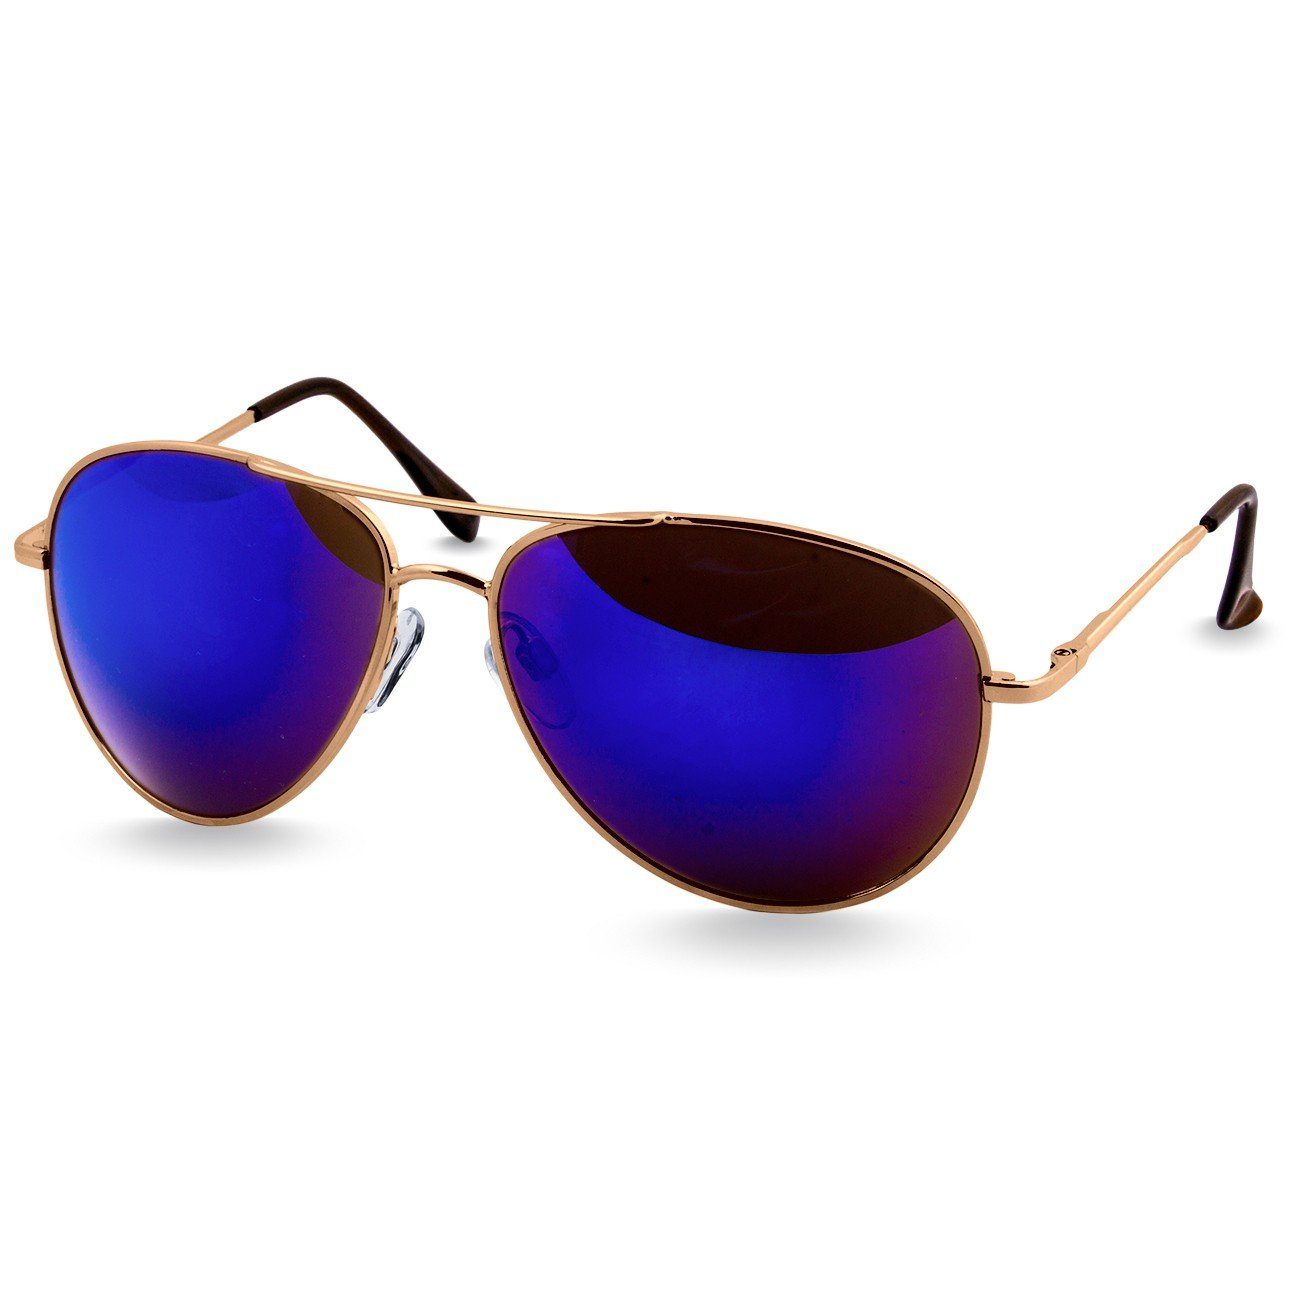 Retro / klassische blau Sonnenbrille SG013 Caspar Unisex verspiegelt gold Pilotenbrille